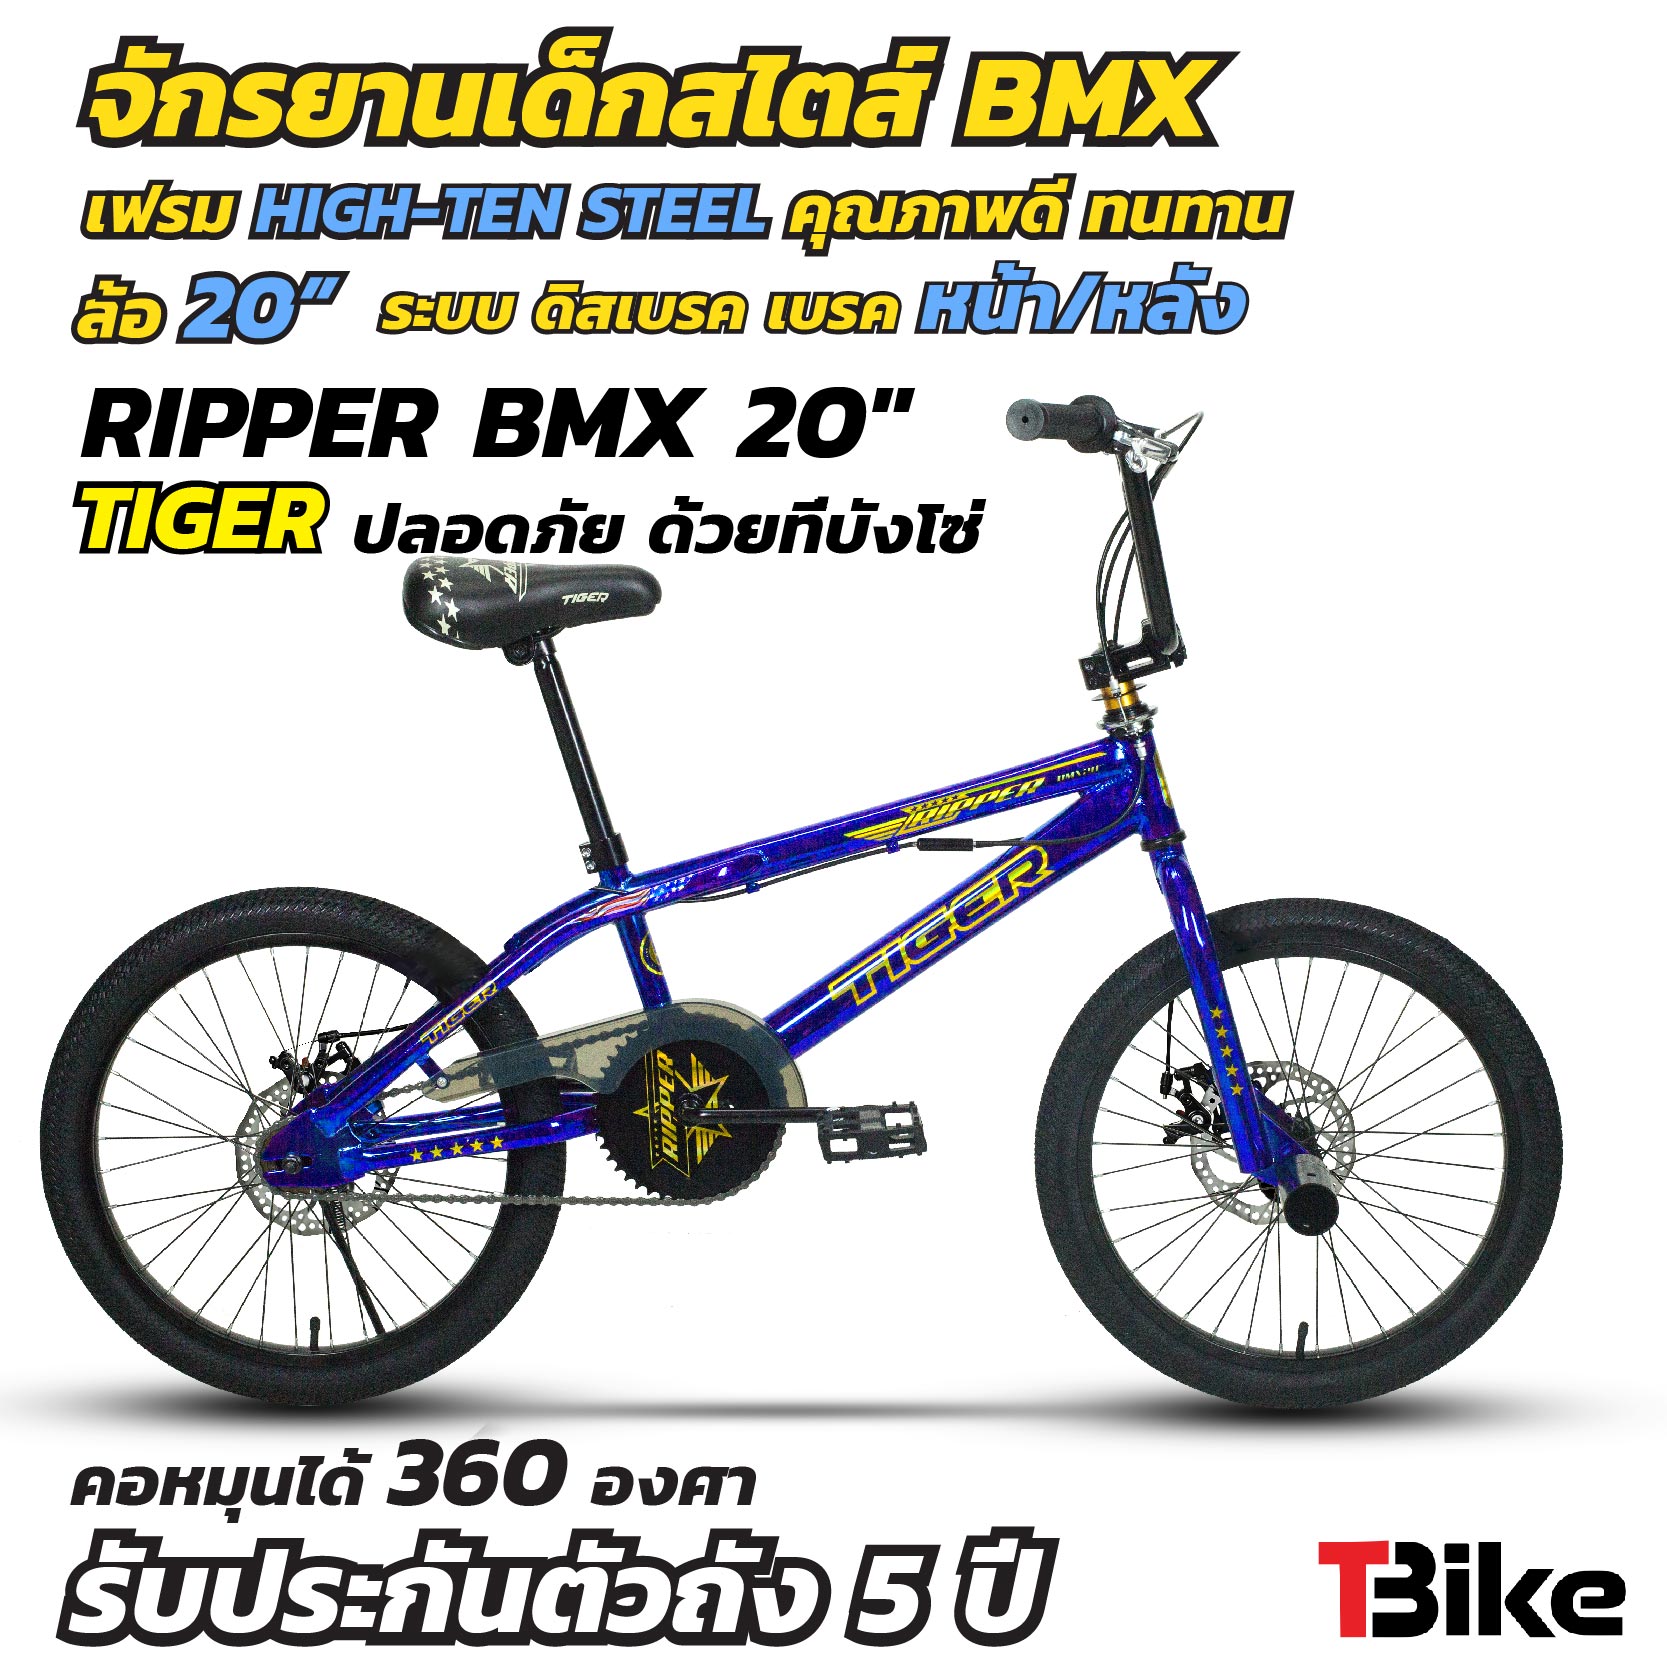 จักรยาน BMX RIPPER จักรยานบีเอ็มเอ็กซ์ คอโรเตอร์ หมุนได้ 360 องศา เฟรม สีอโนไดซ์ ล้อ20 นิ้ว ยางใหญ่ จักรยานเล่นท่าได้ มีสไตล์ ปั่นสนุก